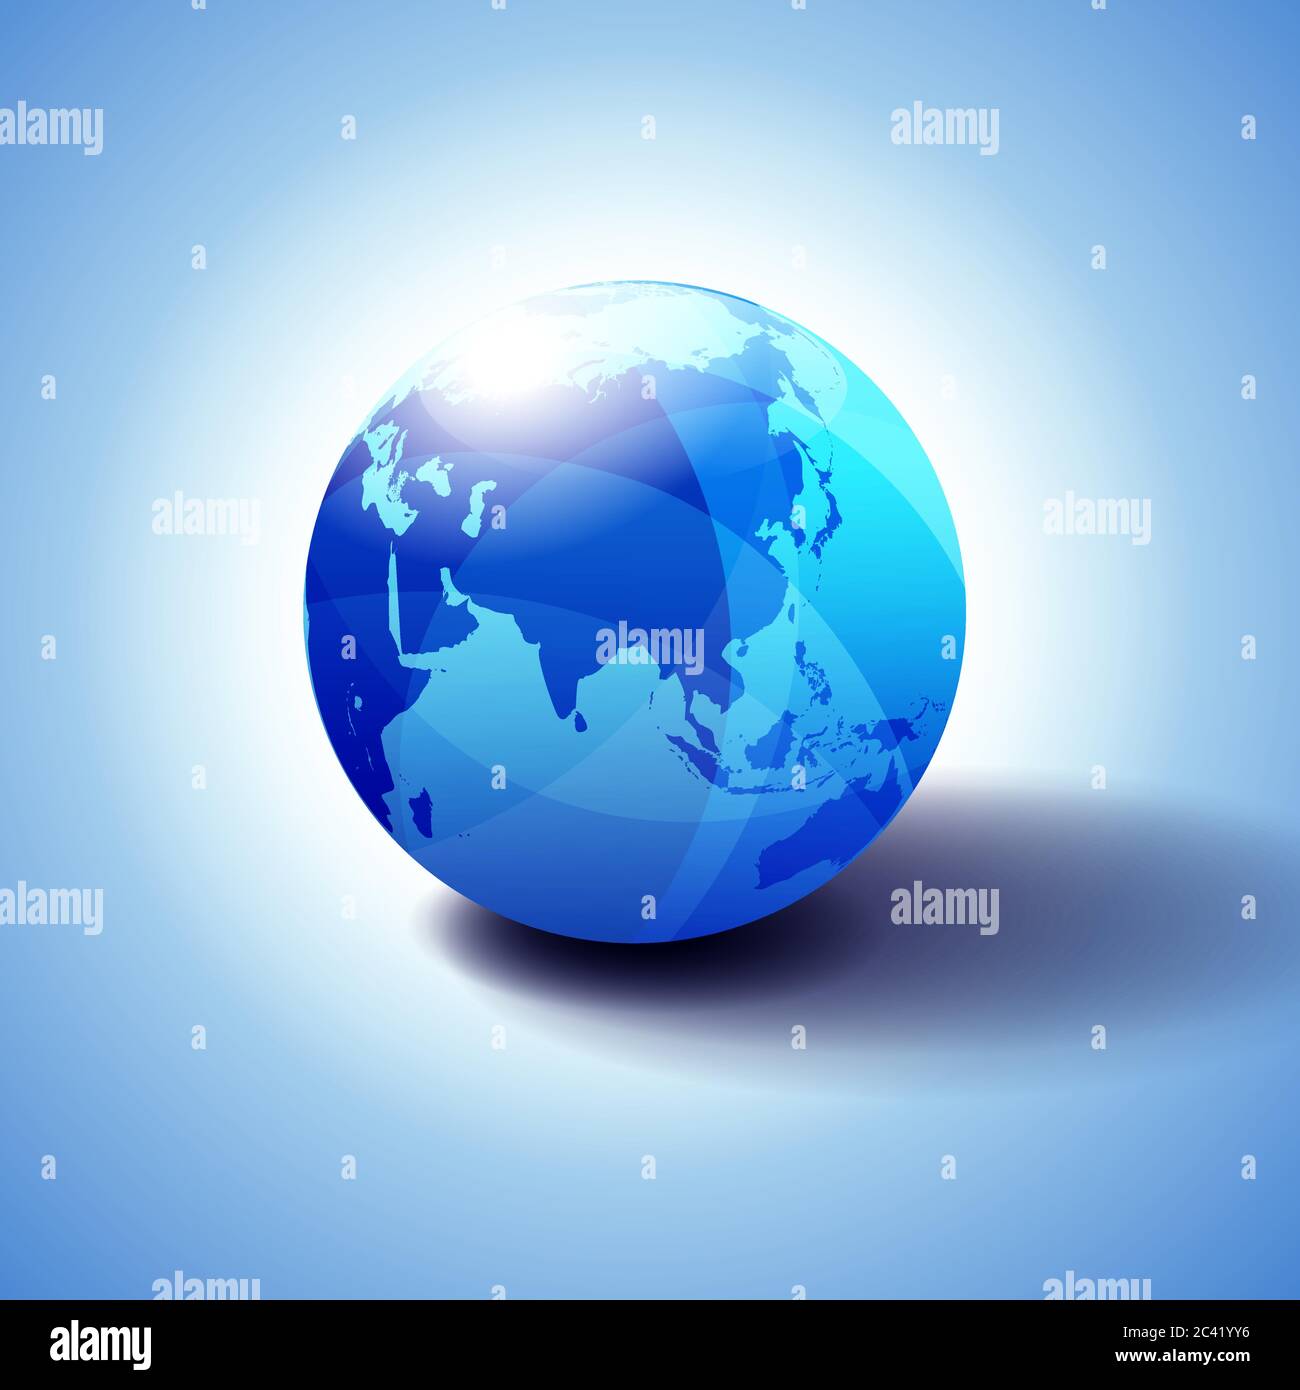 China, Asien und Japan Global World Globe Icon 3D-Illustration, glänzende, glänzende Kugel mit Global Map in subtilen Blues, die ein transparentes Gefühl gibt Stock Vektor